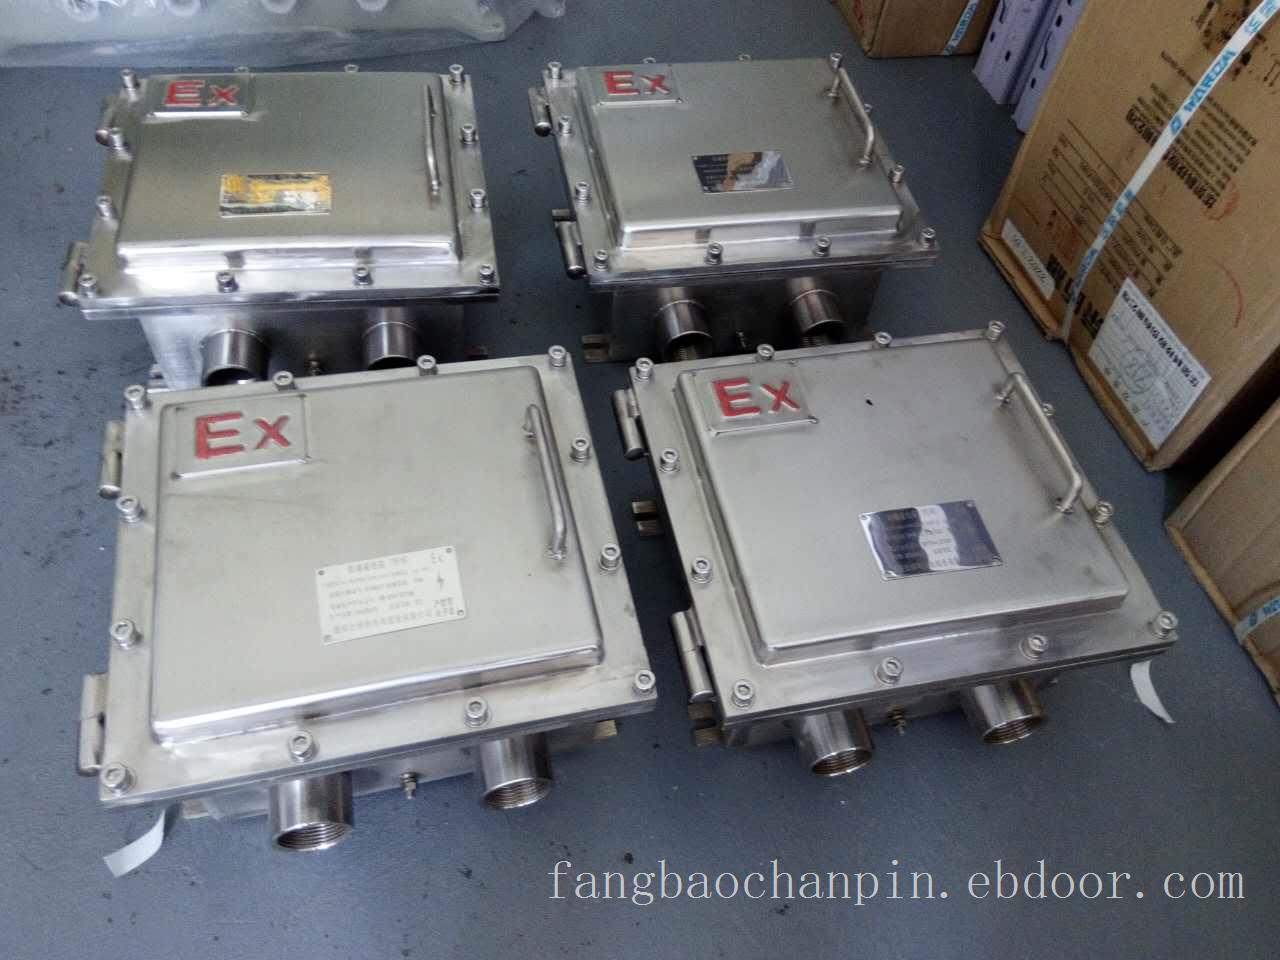 防爆接线箱是各种高危场所使用的特殊设备